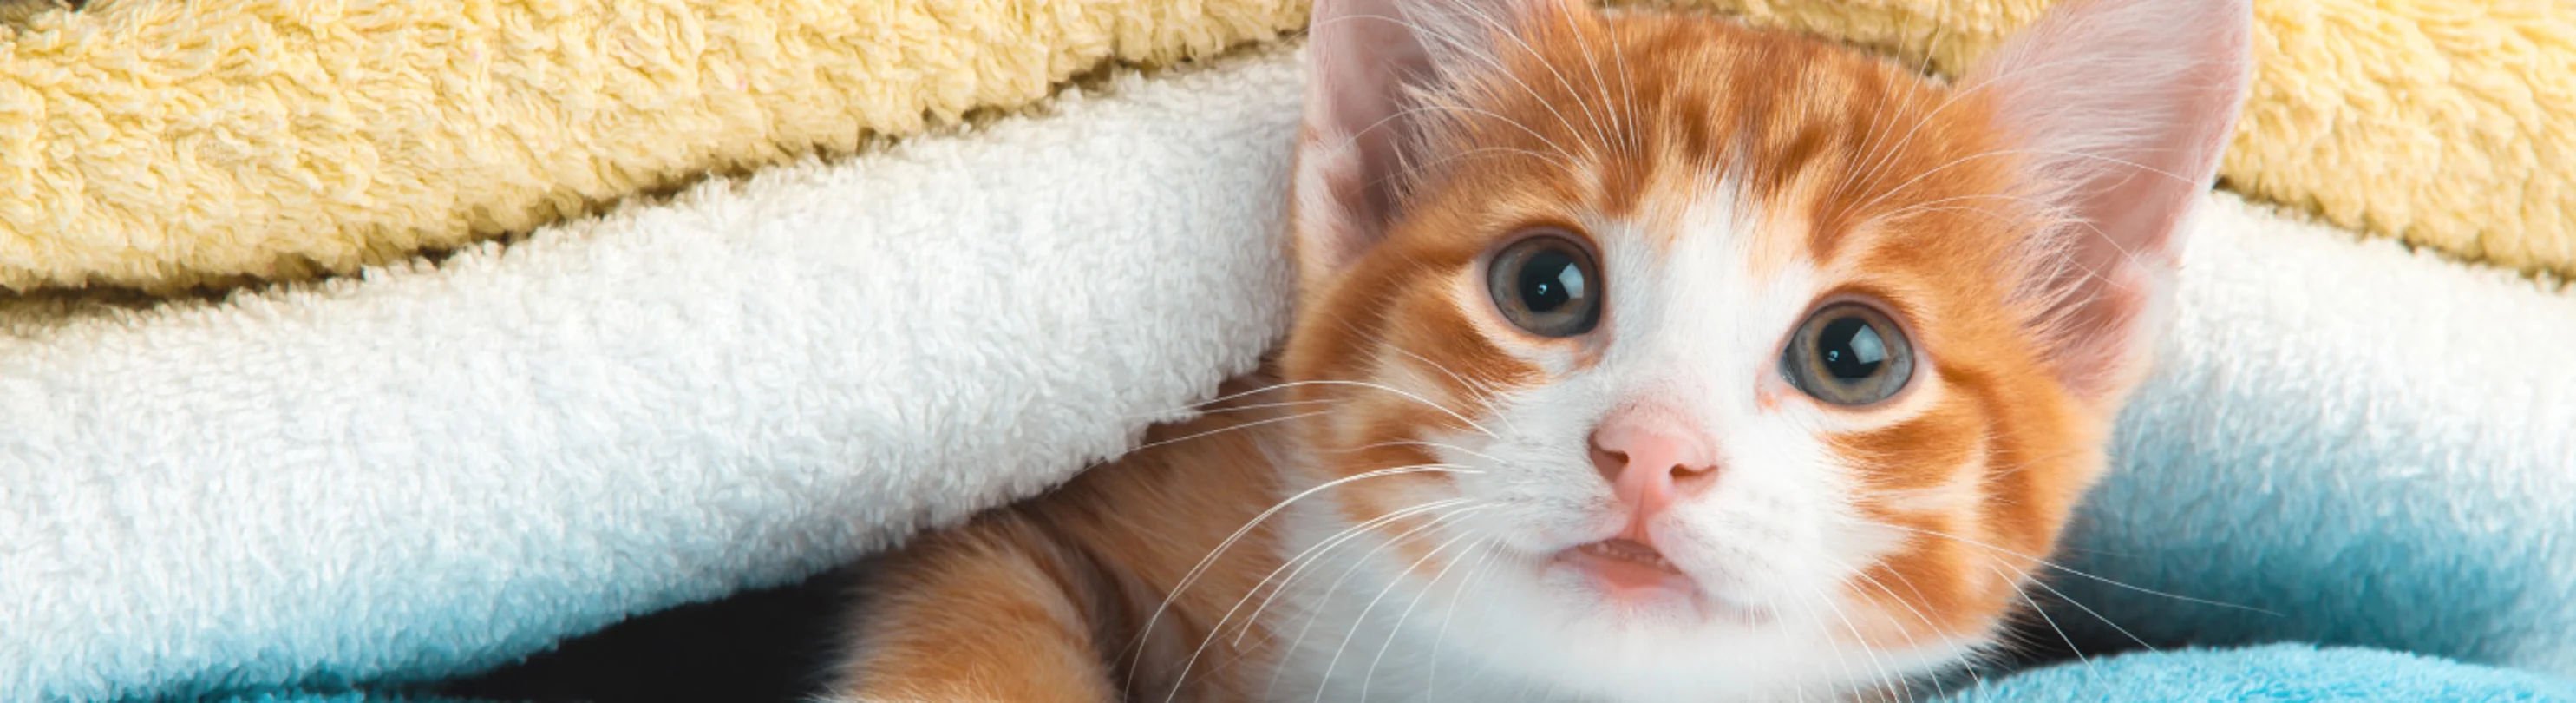 Orange kitten in blankets